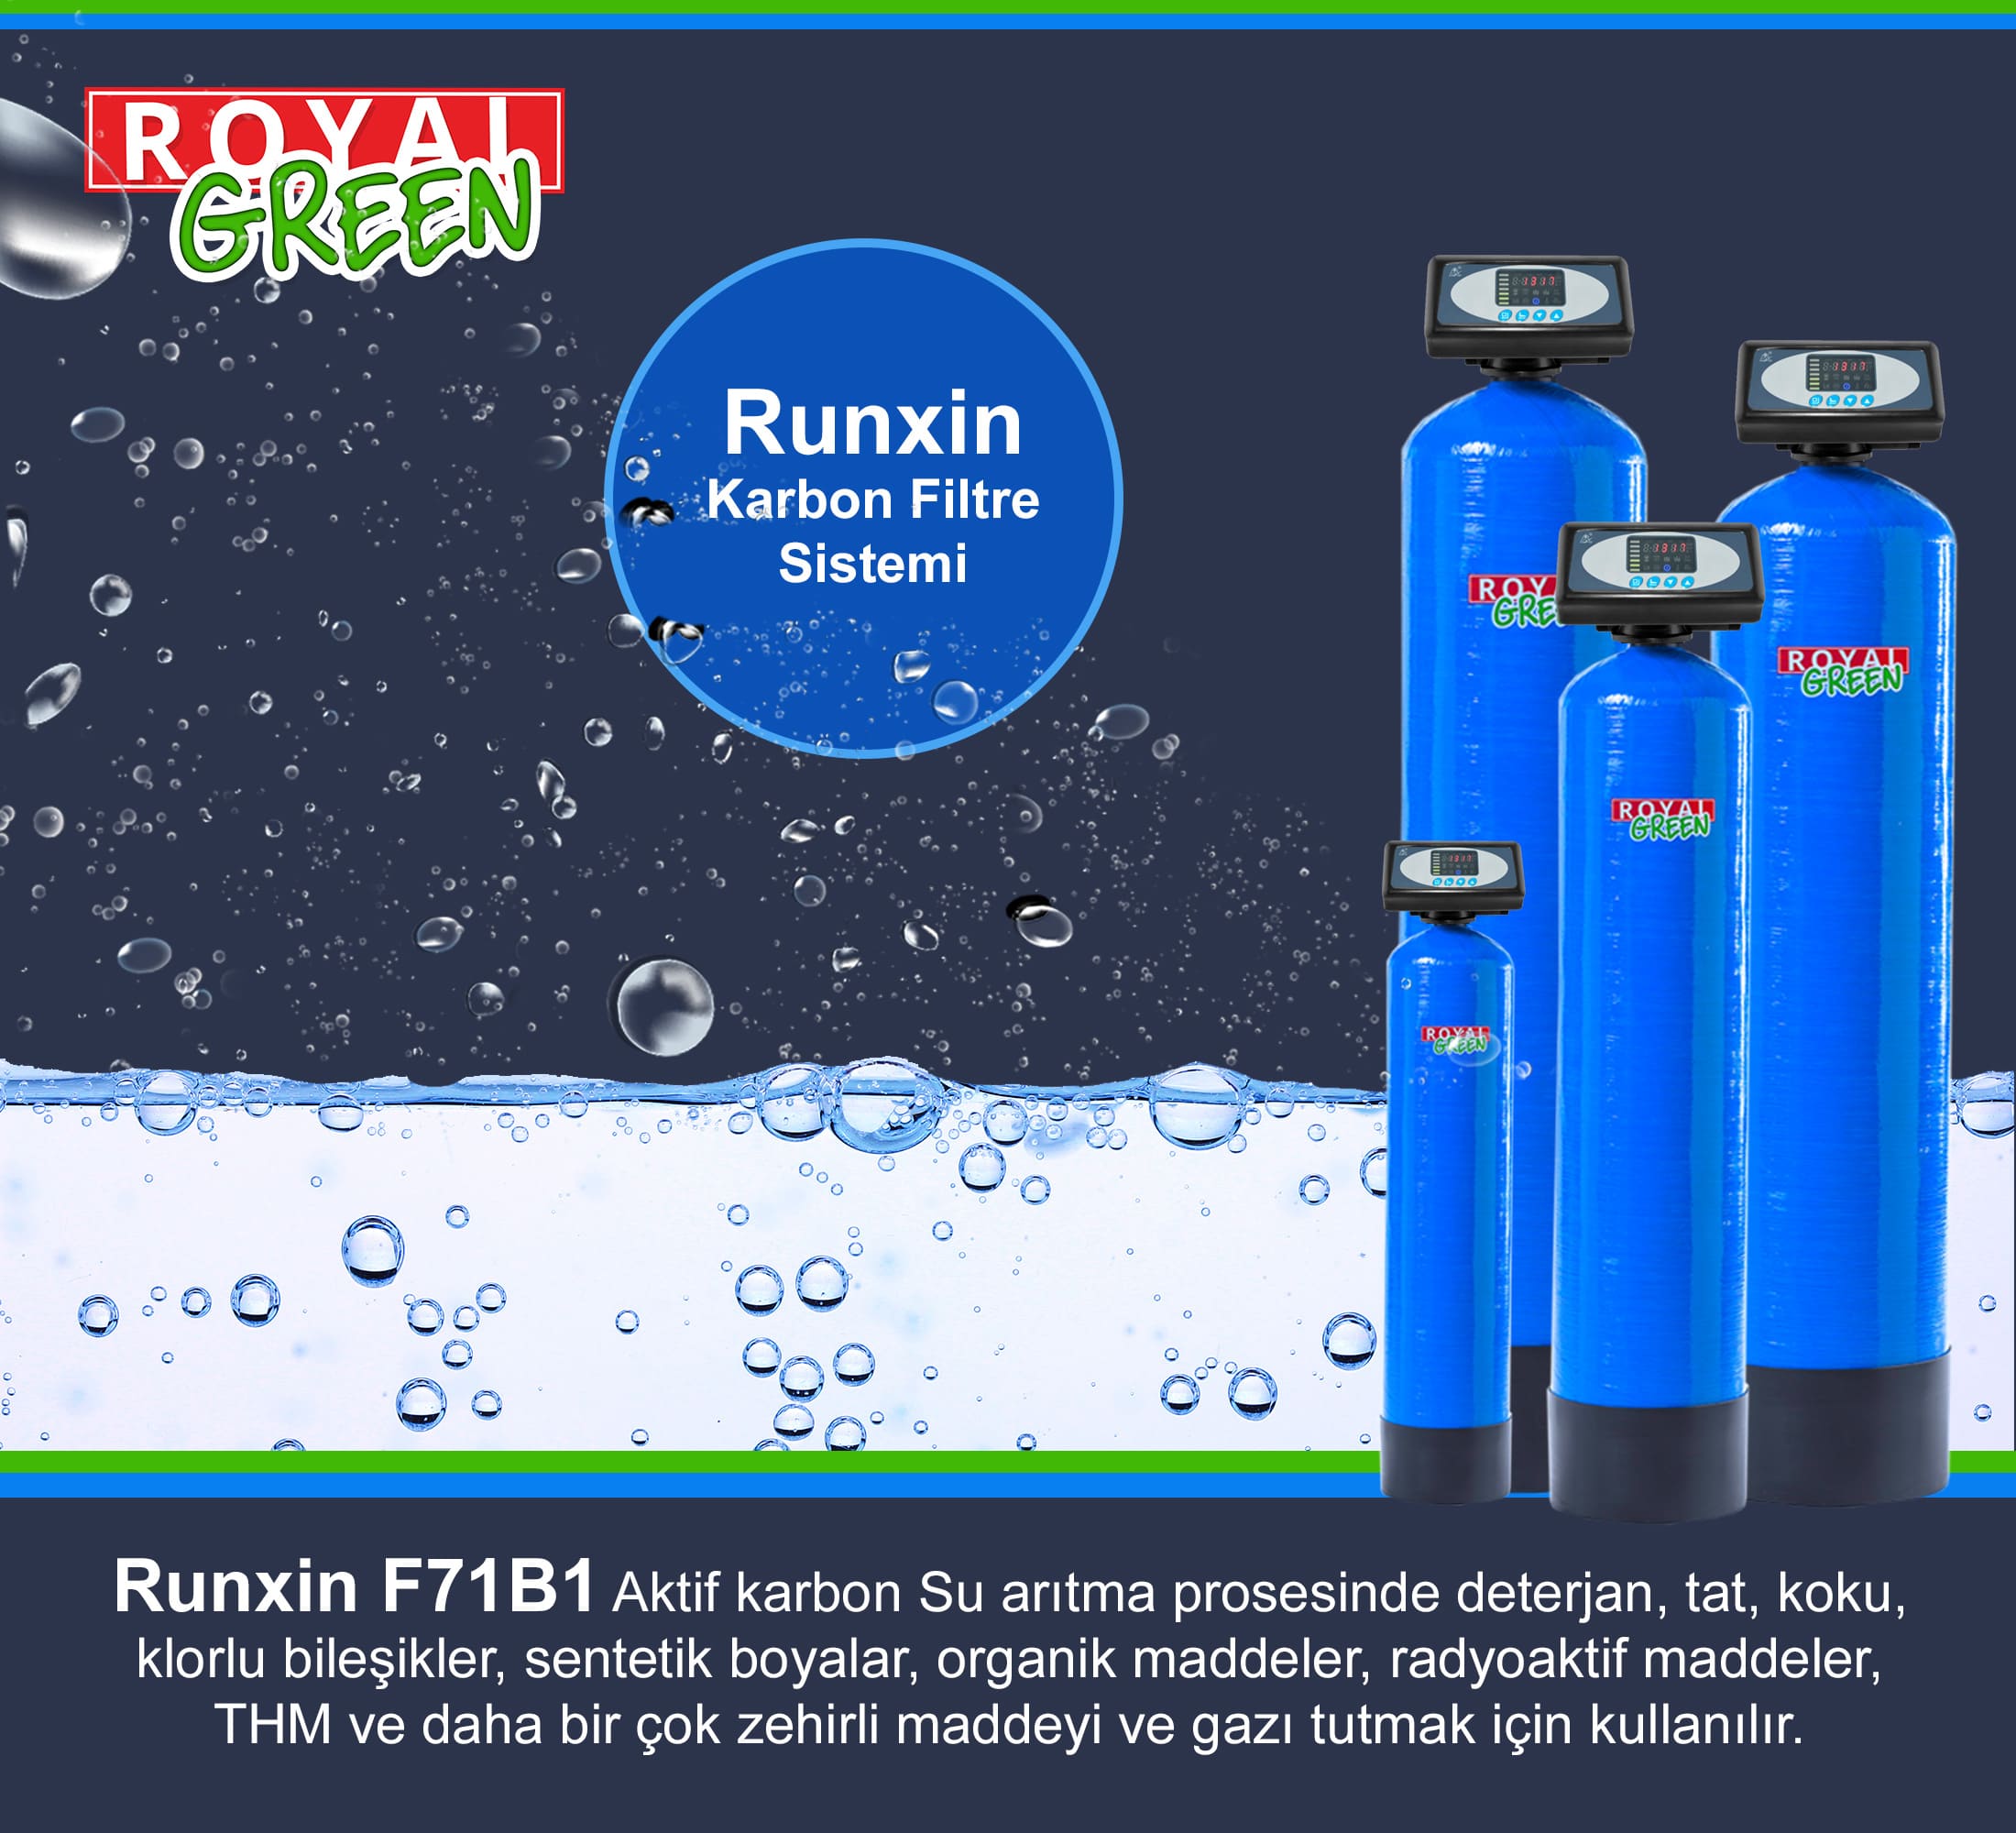 Runxin F71B1 Karbon Filtre Sistemi Banner min